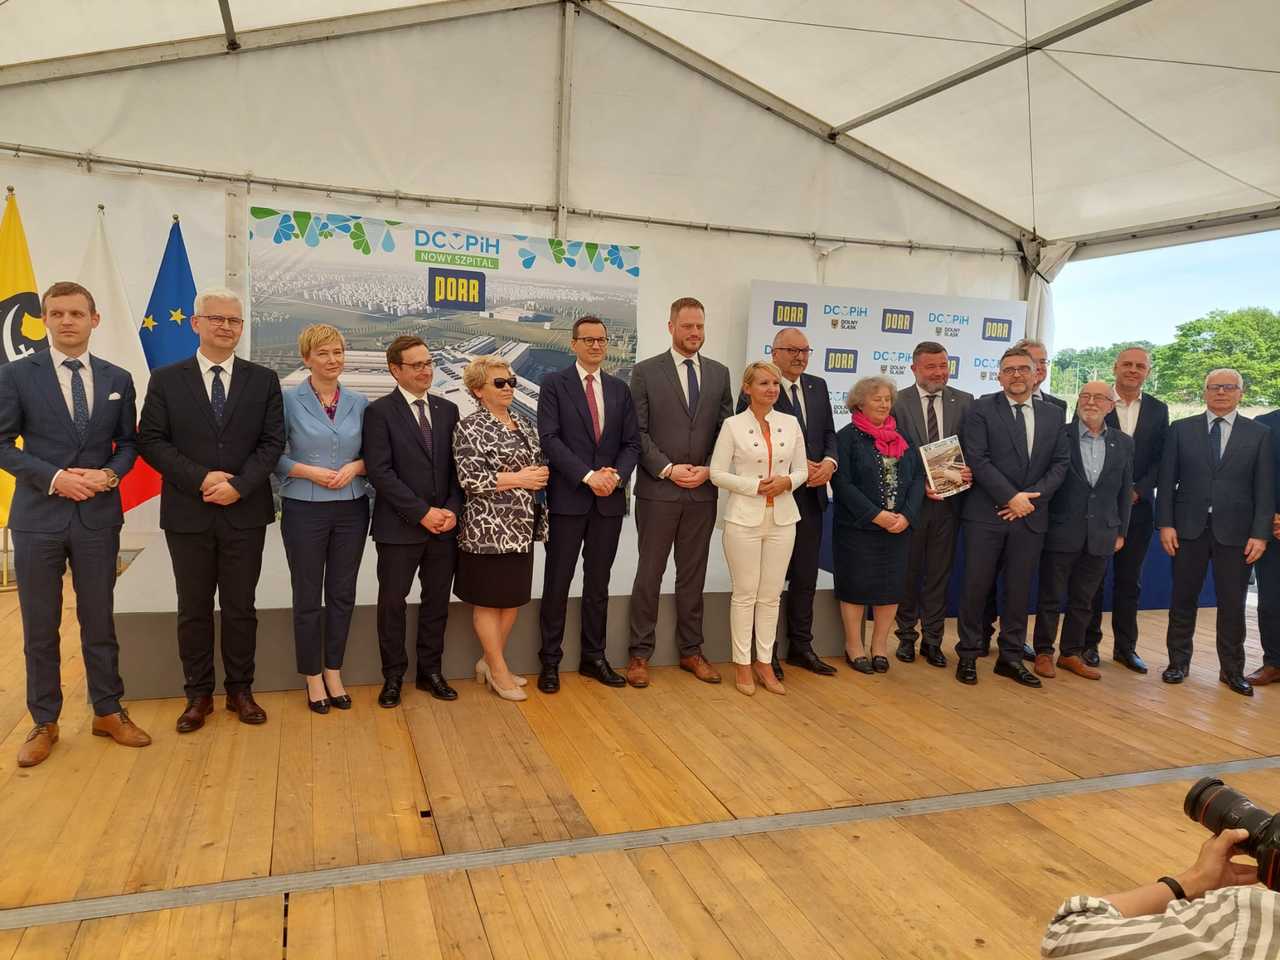 Umowa na budowę szpitala onkologicznego we Wrocławiu podpisana